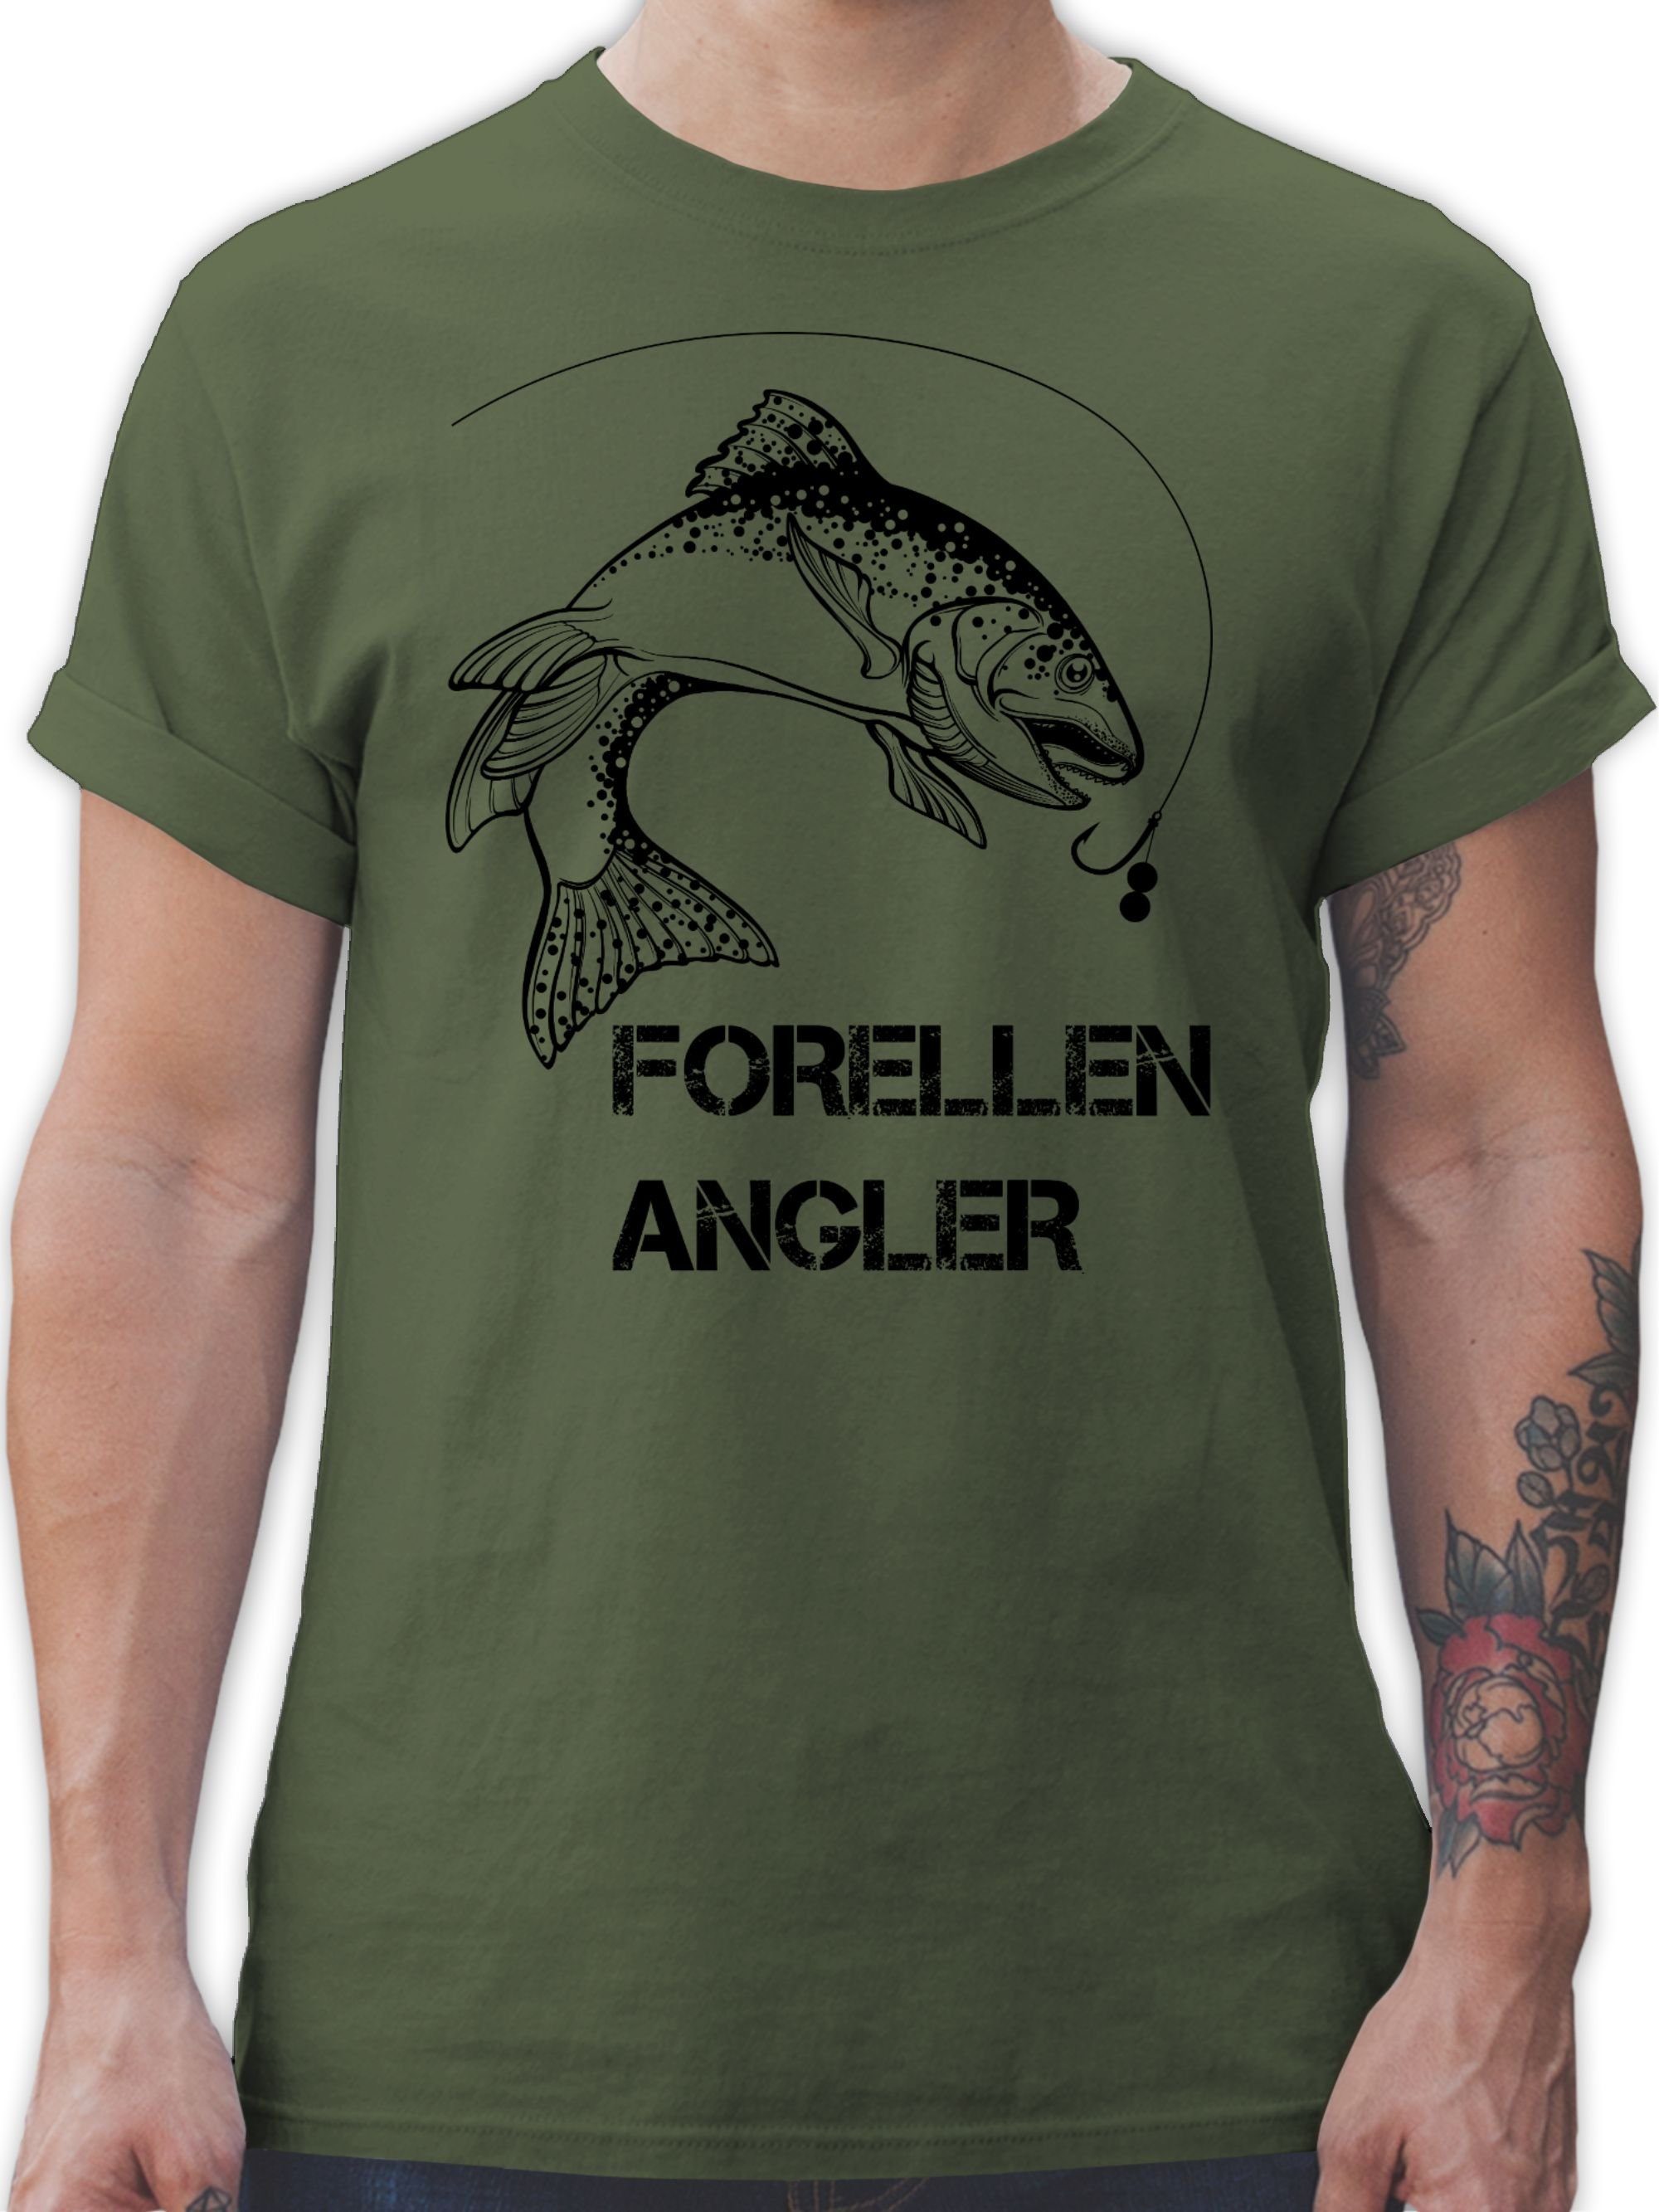 Geschenke 1 - T-Shirt Army Angler Grün Shirtracer schwarz Forellenangler